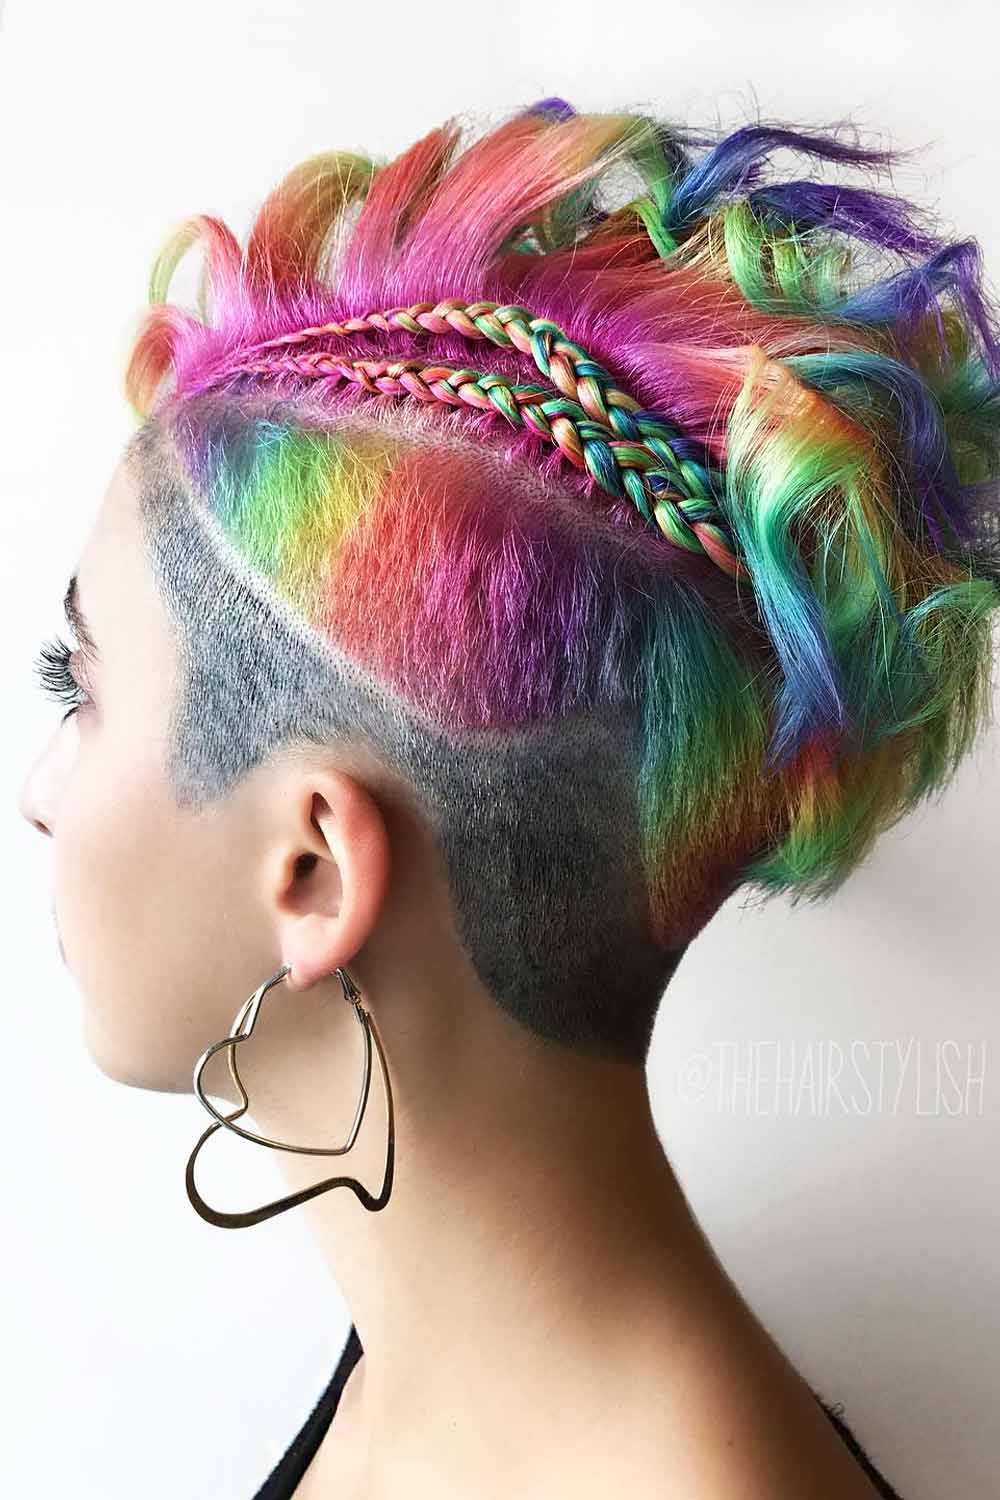 Hairstyles With Rainbow Braids #undercuthairstyles #undercutwomen